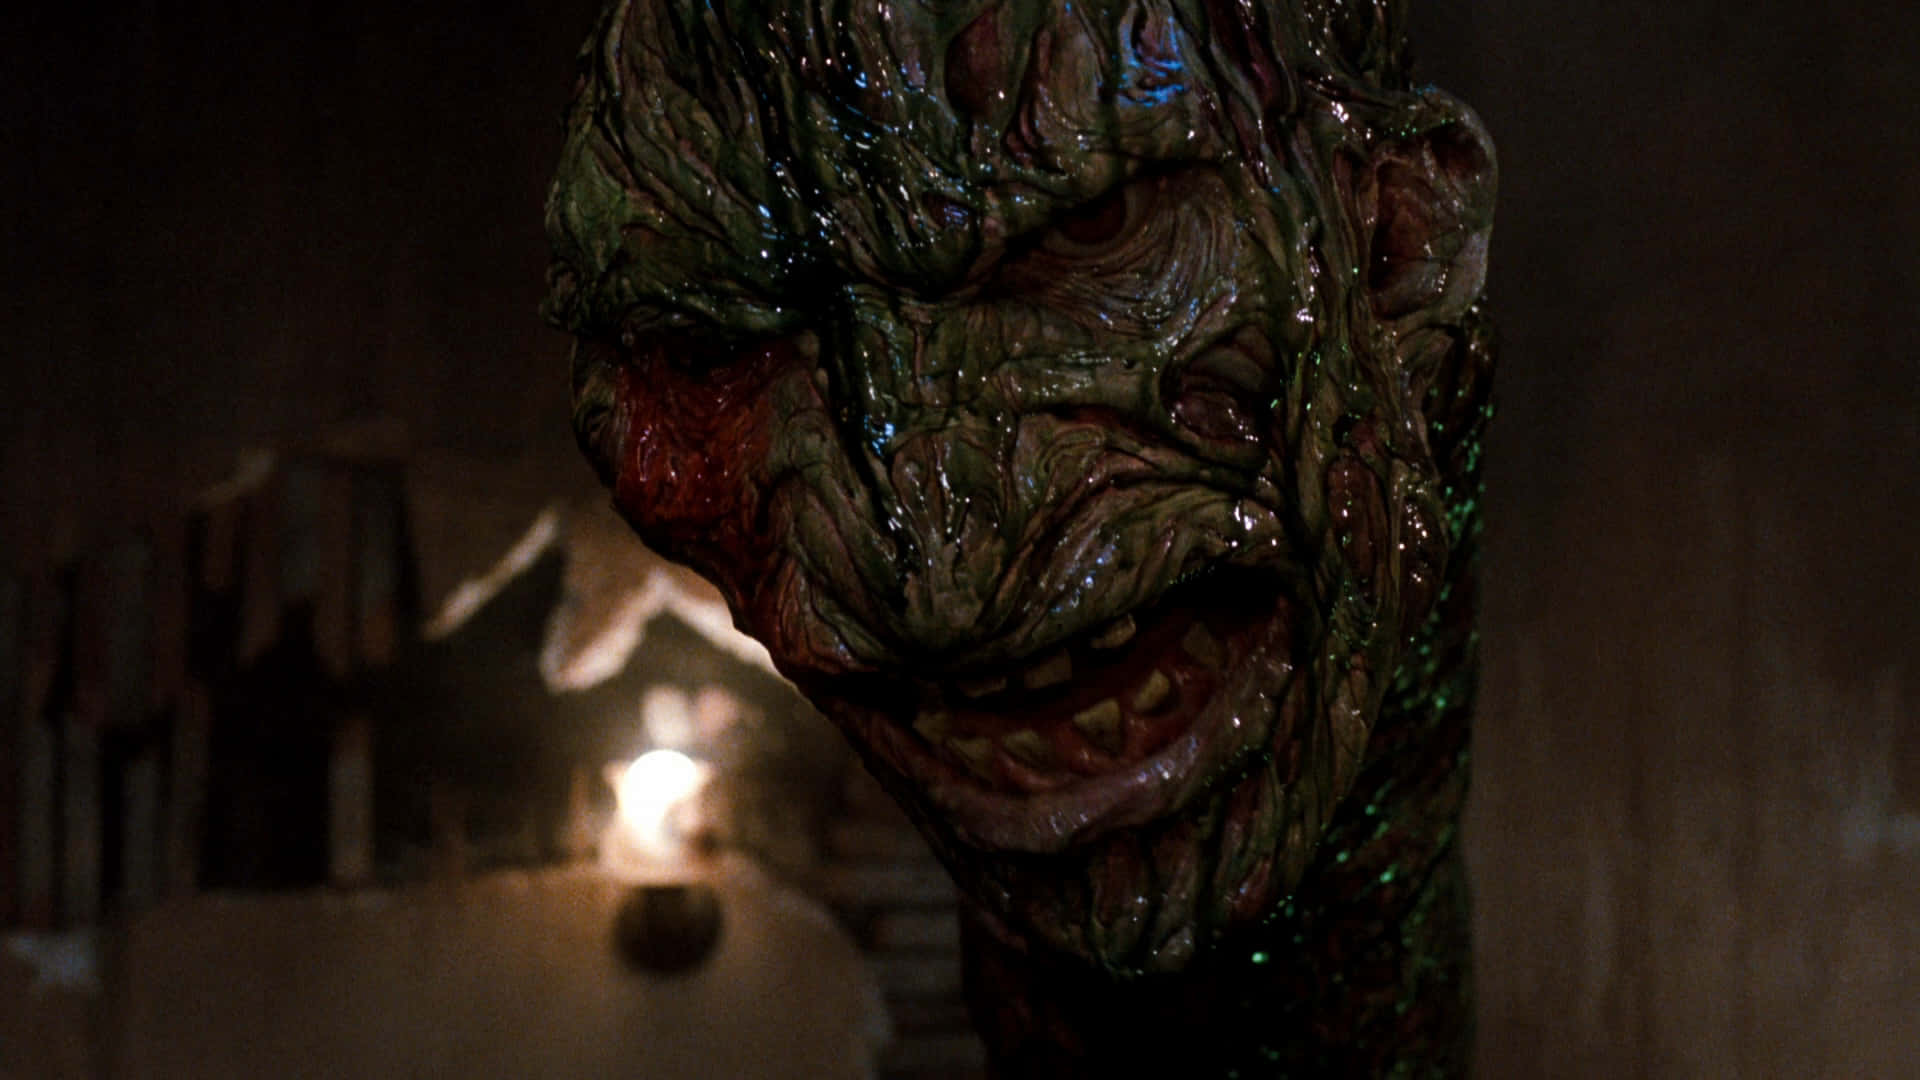 Freddy Krueger's sinister smile in high-definition.